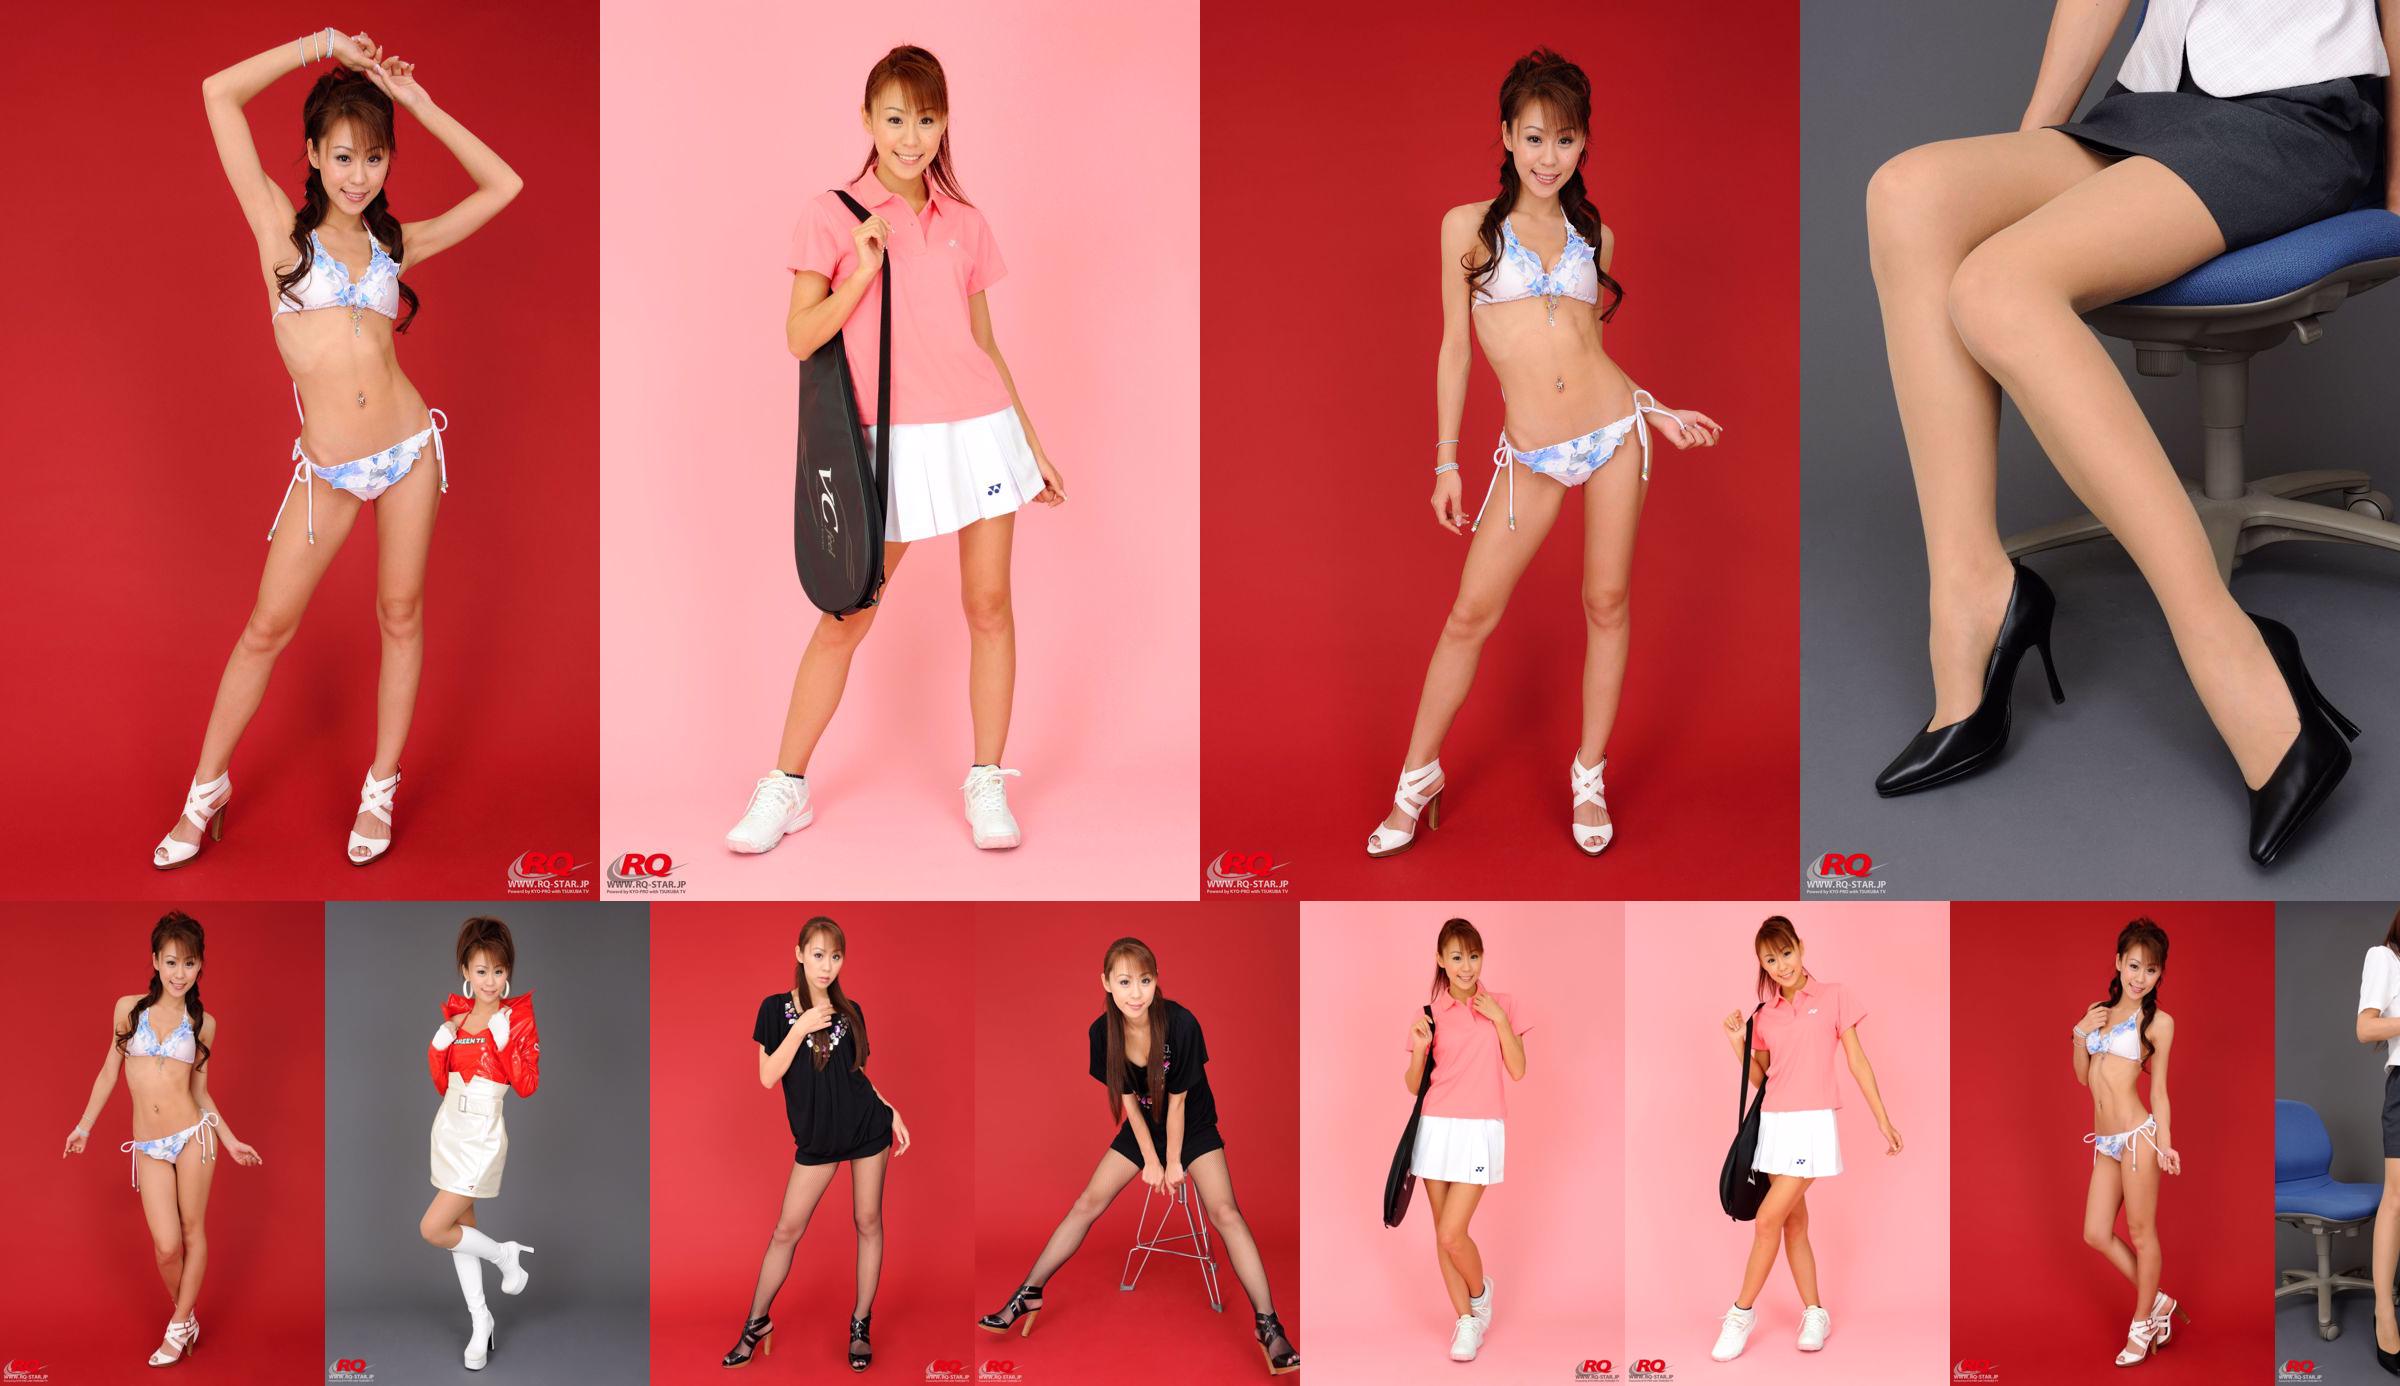 [RQ-STAR] NO.01072 Mika Yokobe Mika Yokobe / Mika Yokobe Tennis Wear No.39c4a5 Strona 2